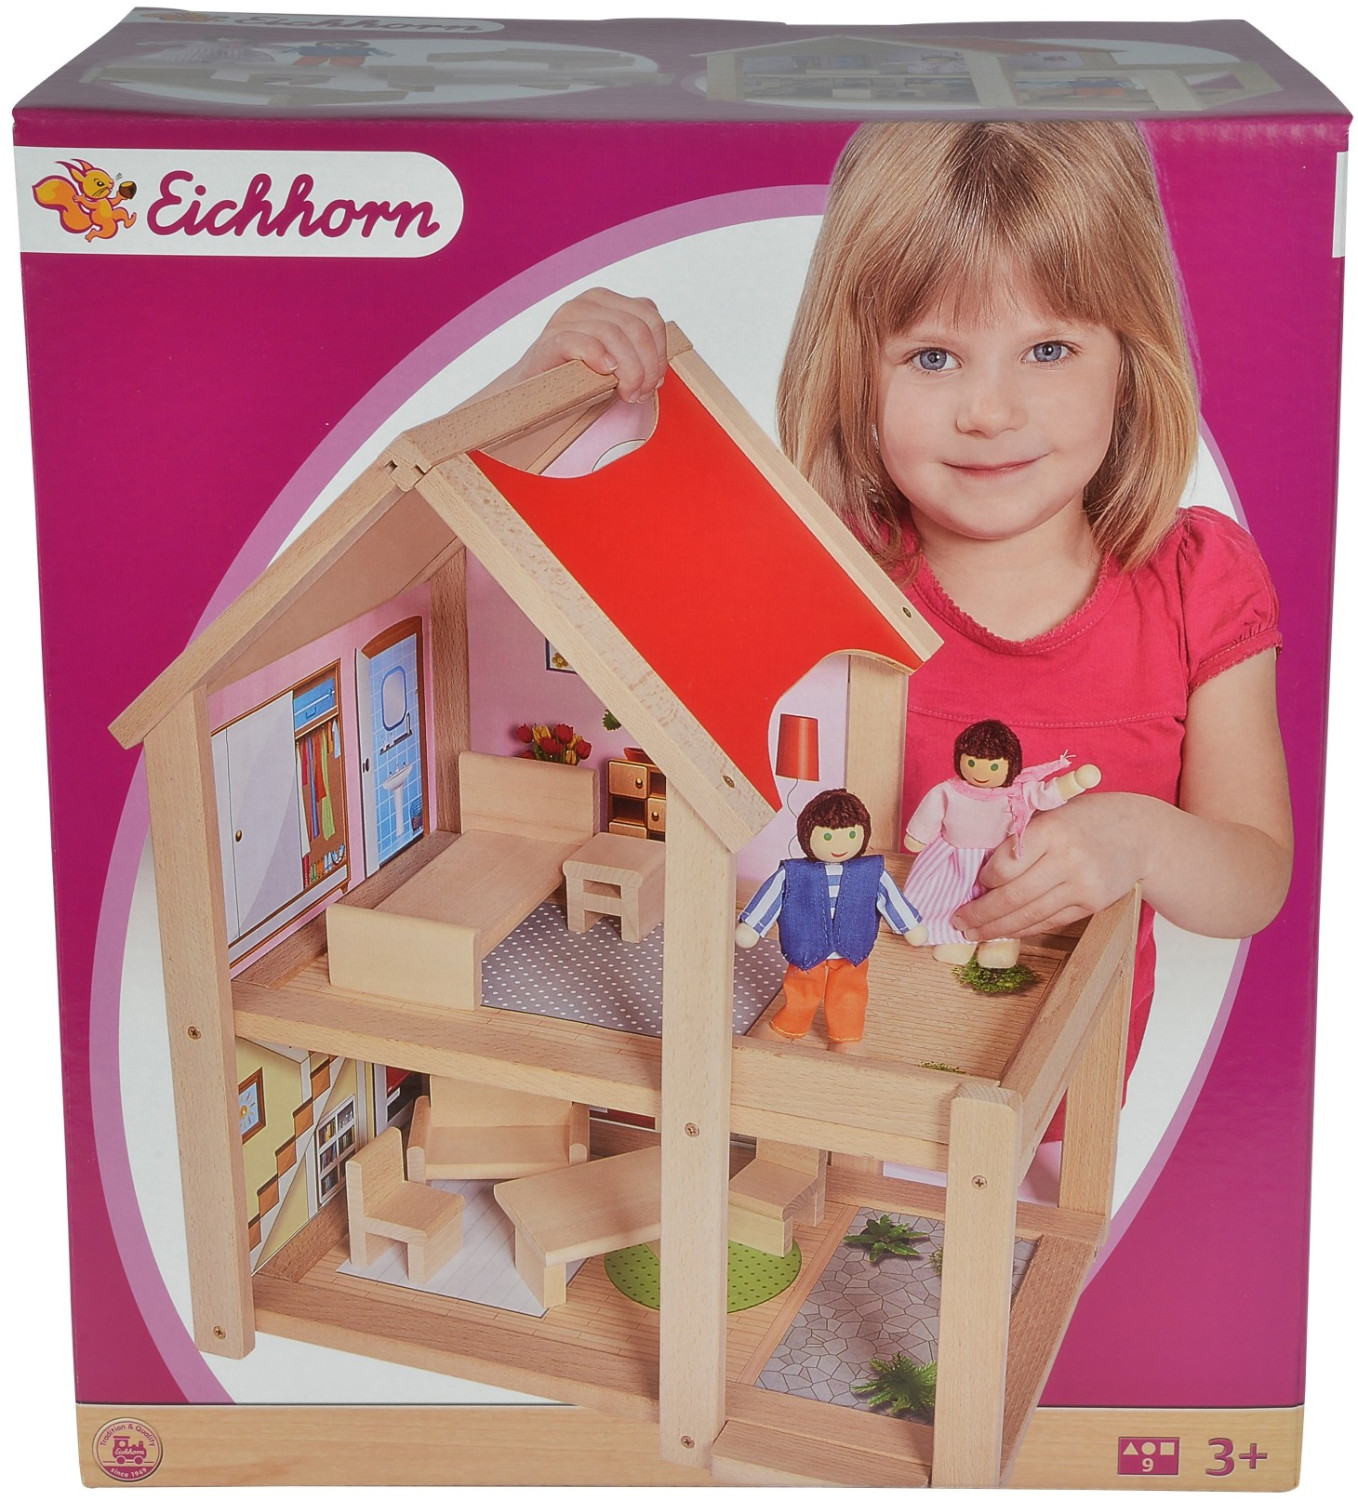 Eichhorn casa delle bambole (2501) a € 37,90 (oggi)